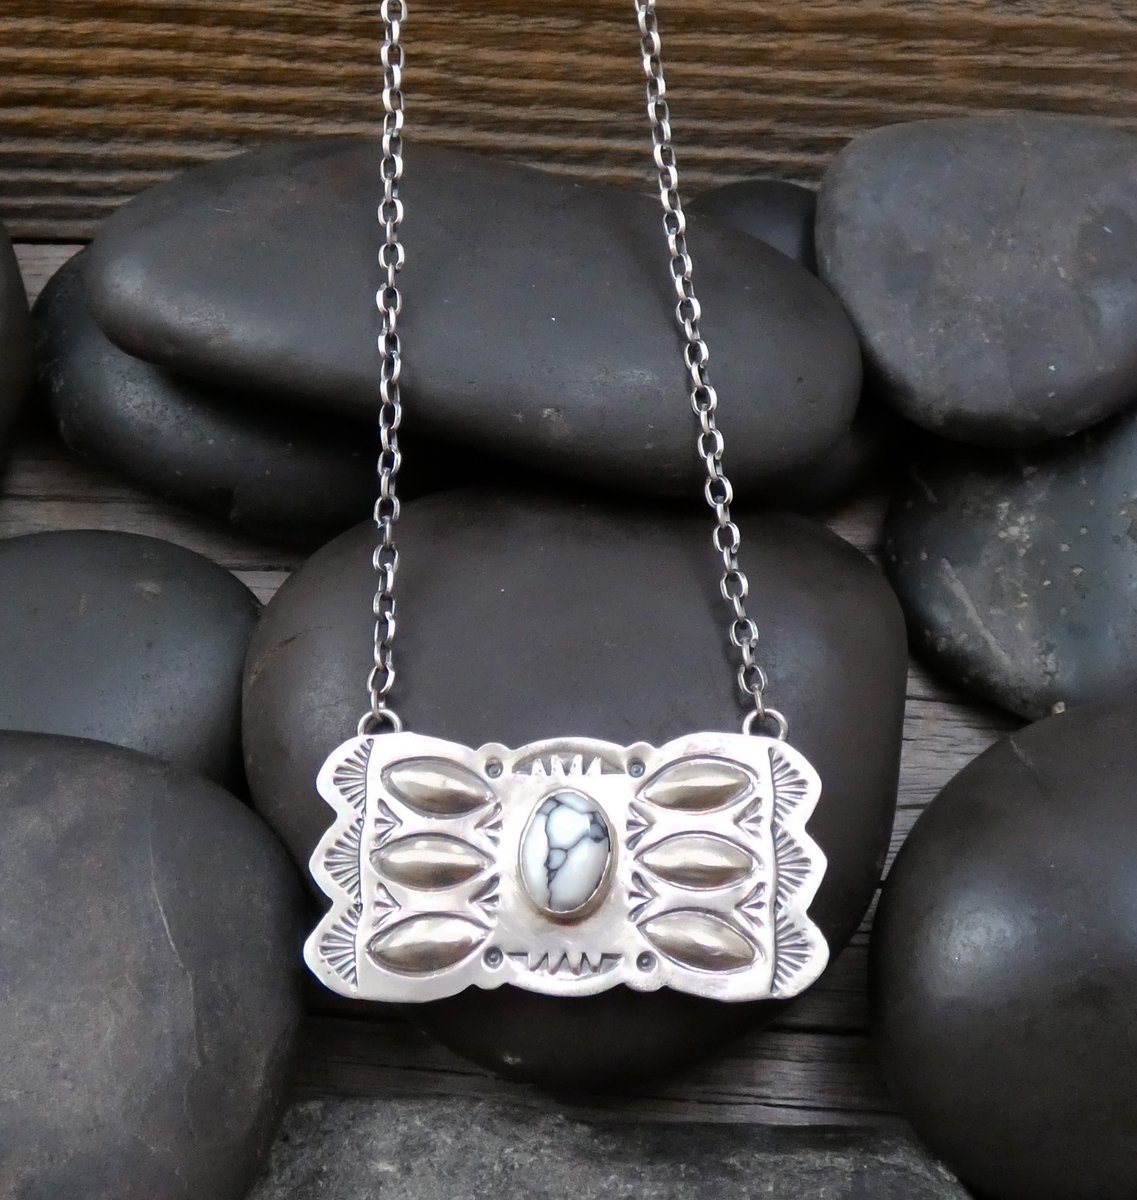 🤠 30% SALE on this stunning Navajo handmade bar necklace; see here! 🤠  ow.ly/1ilh50Nkrv6 #Etsyfinds #Etsyshop #Etsystore #Etsygifts #Etsyjewelry #barnecklace #whitebuffalo #sacredbuffalo #NativeAmericanjewelry